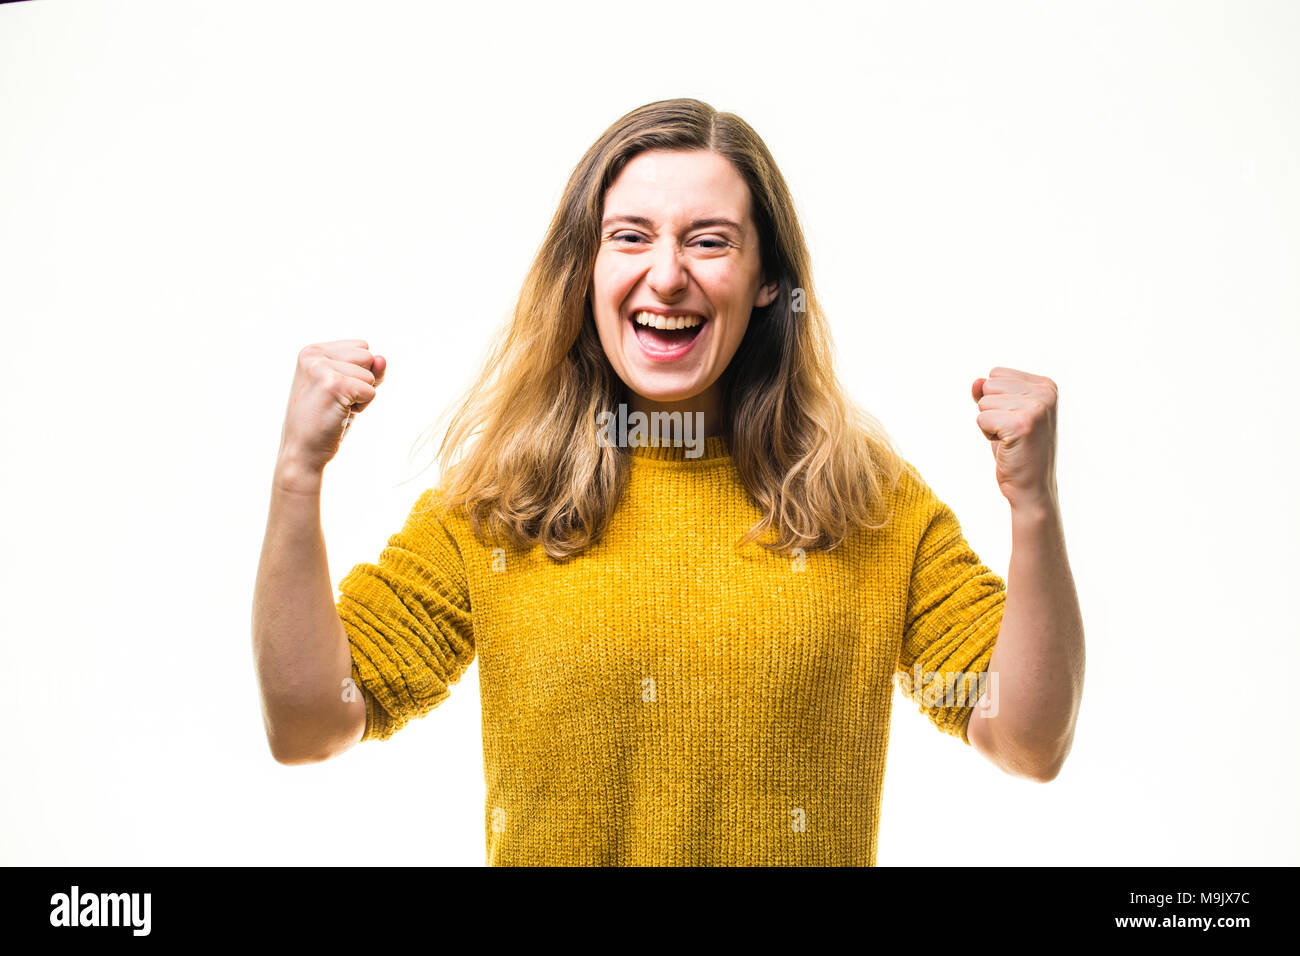 Erfolge feiern - ein glückliches Lächeln positive begeisterten jungen kaukasischen Frau Mädchen, pumpen ihre Fäuste in Ausgelassenheit, voller Leidenschaft und Engagement - Großbritannien Stockfoto